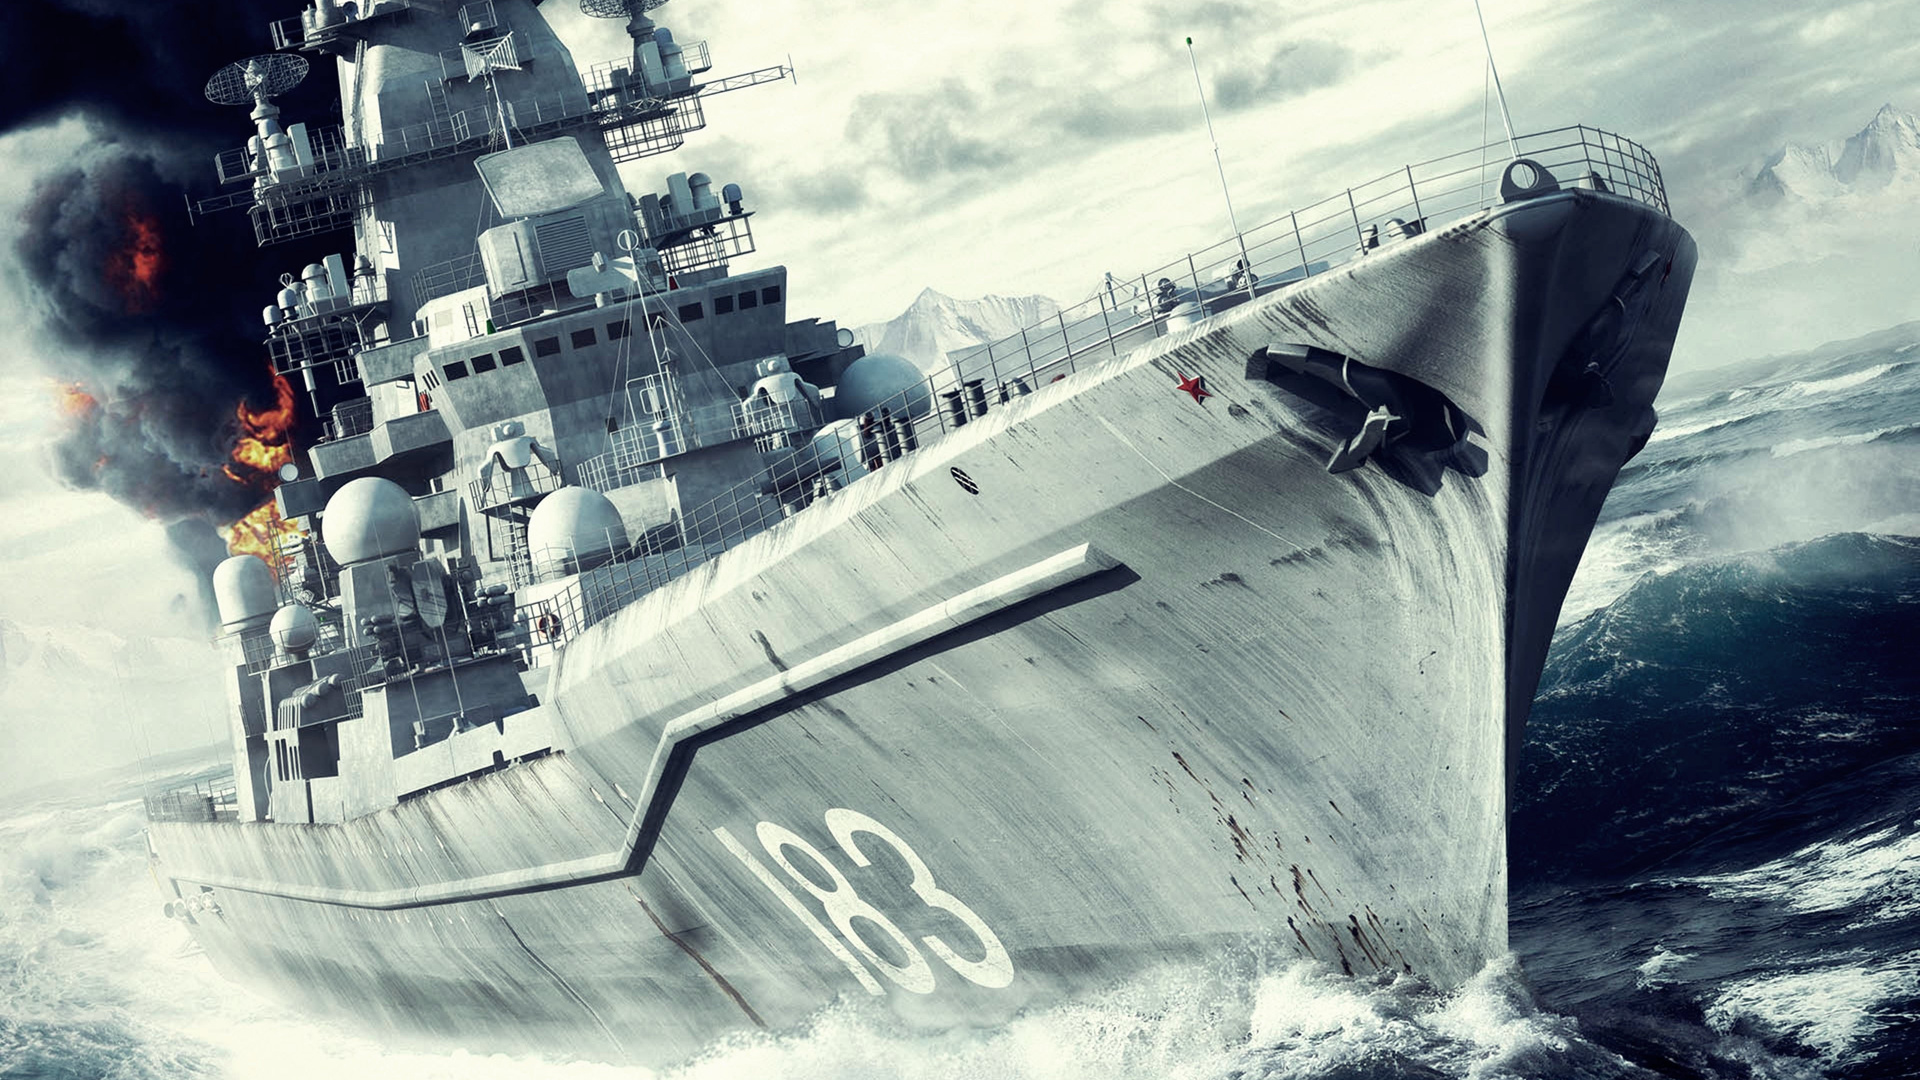 战舰, 海军的船, 军舰, 战列巡洋舰, 驱逐舰 壁纸 1920x1080 允许